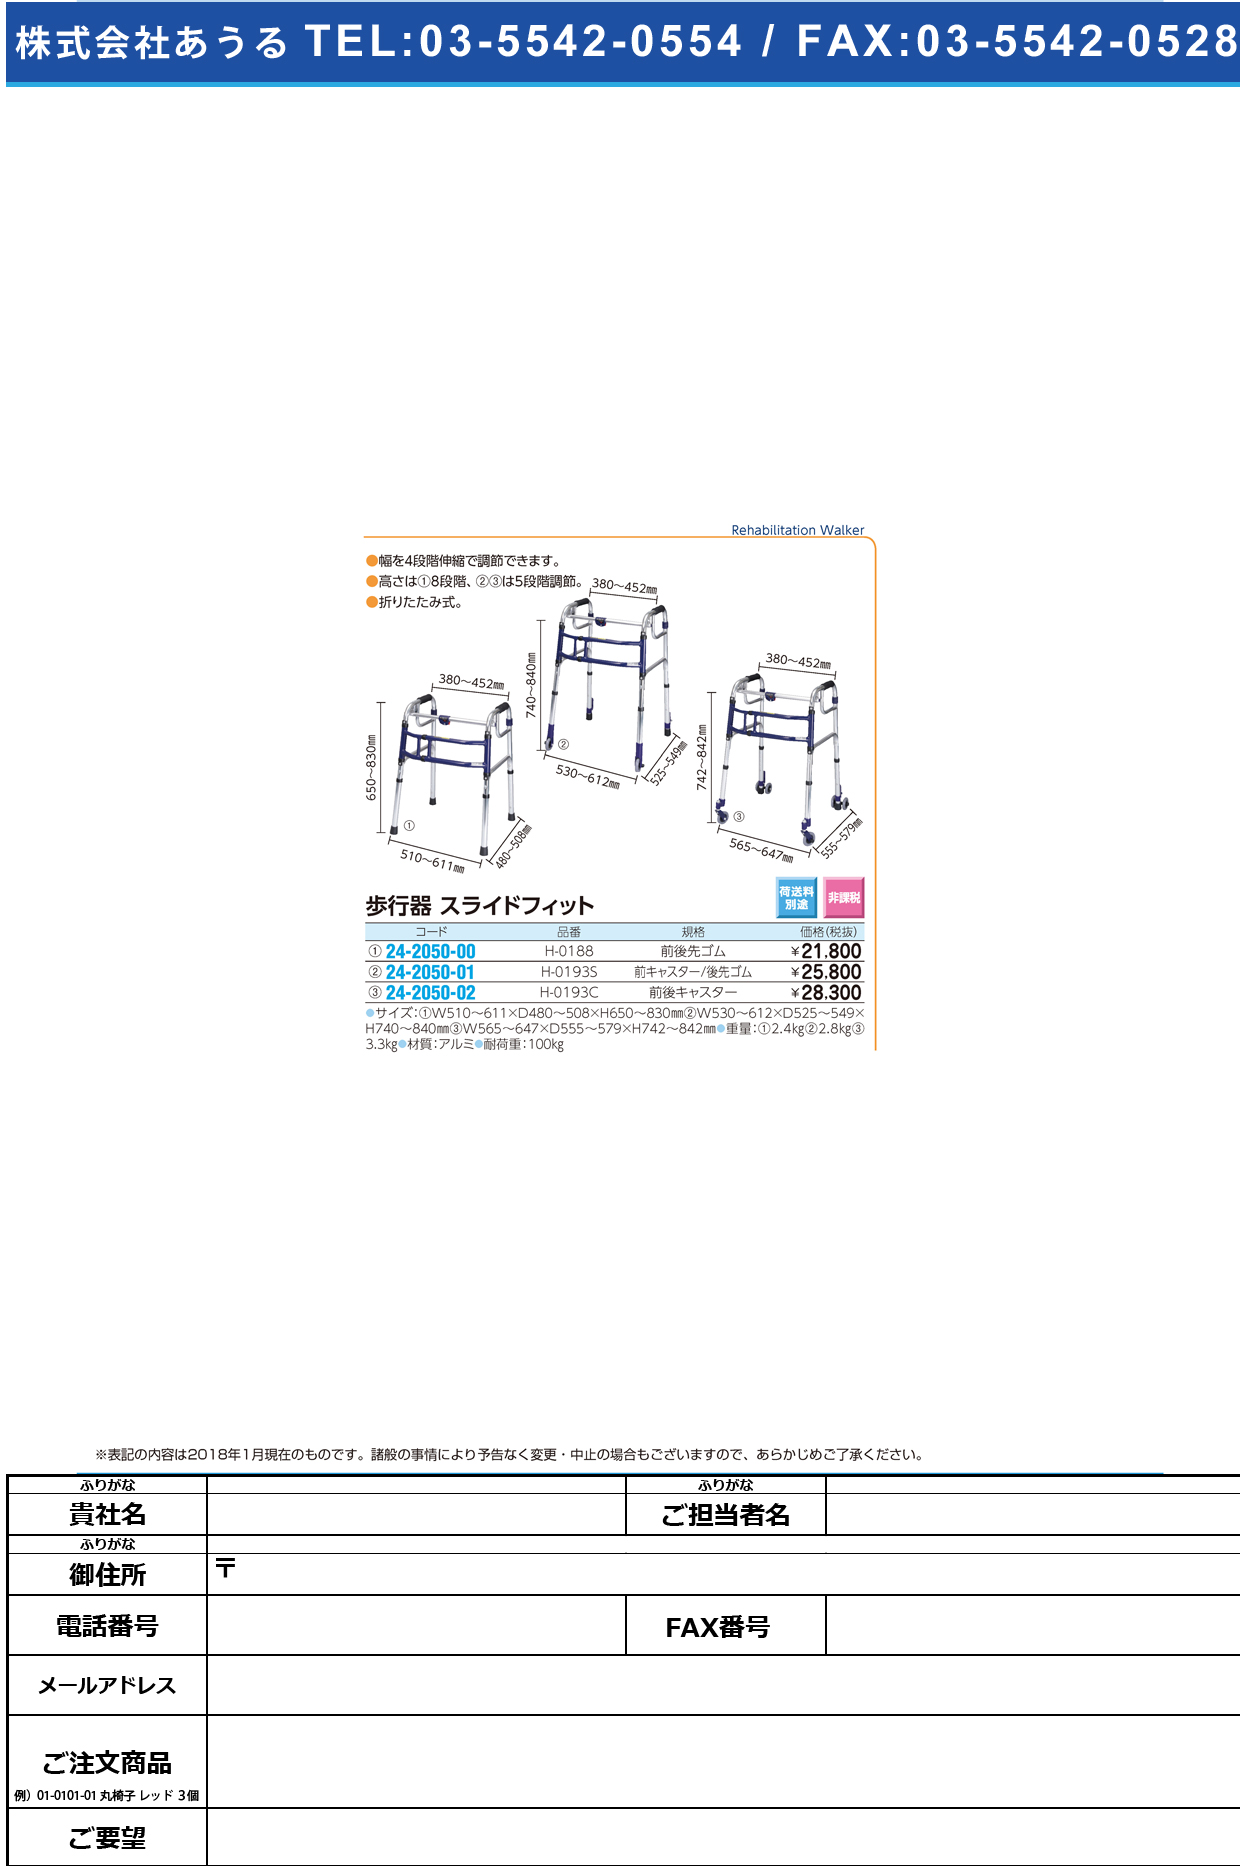 (24-2050-02)スライドフィット（Ｈタイプ） H-0193C(ｾﾞﾝｺﾞｷｬｽﾀｰ) ｽﾗｲﾄﾞﾌｨｯﾄ(Hﾀｲﾌﾟ)【1台単位】【2018年カタログ商品】